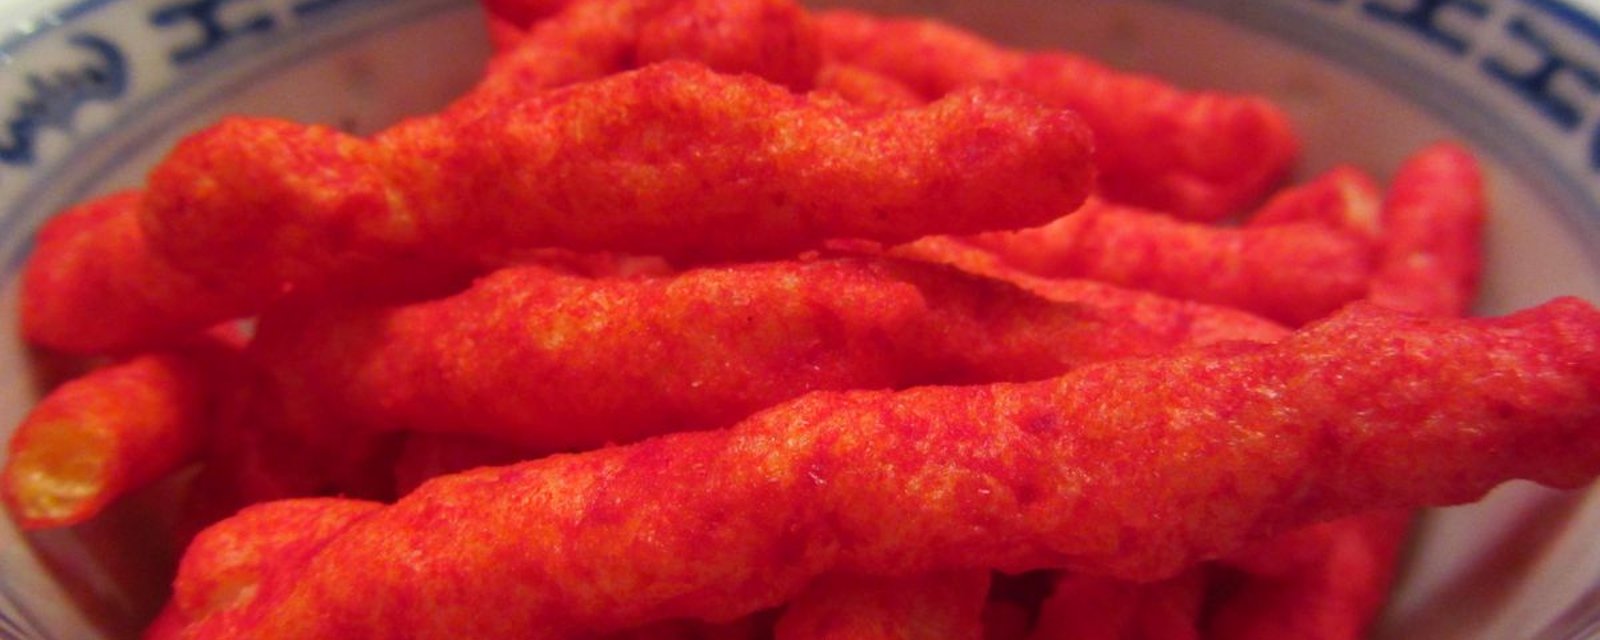 Une nouvelle saveur de Doritos et de Cheetos tellement épicée rend les employés de l'usine malades.